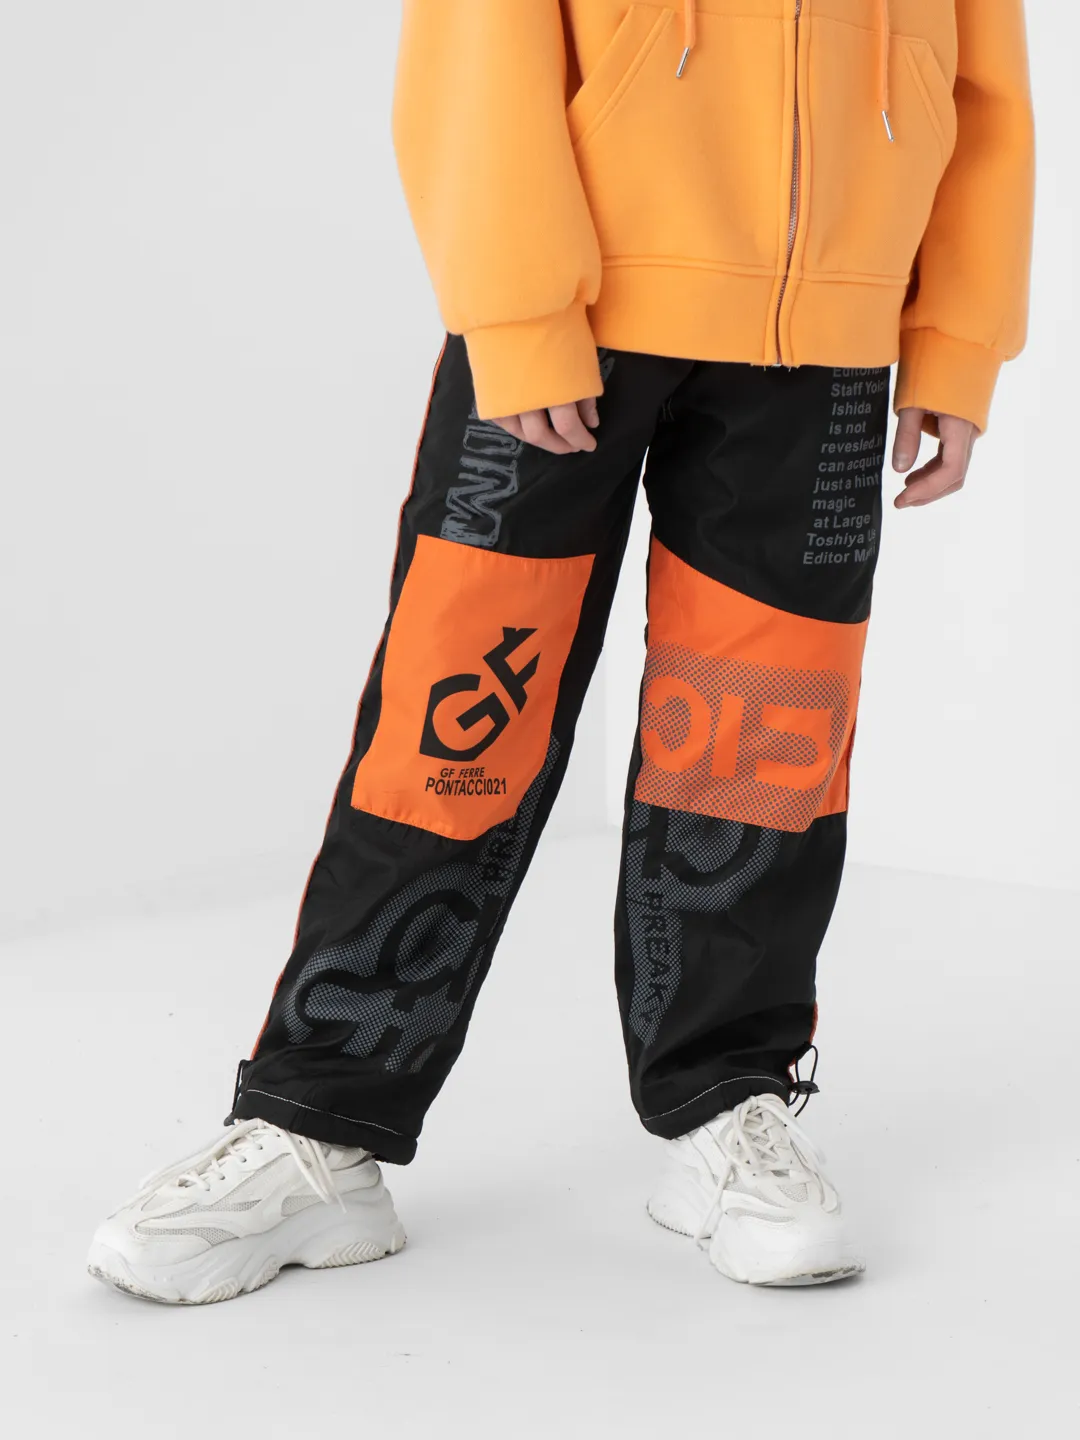 Спортивные штаны болоневые, с флисом, детские купить по цене 1300 ₽ винтернет-магазине KazanExpress